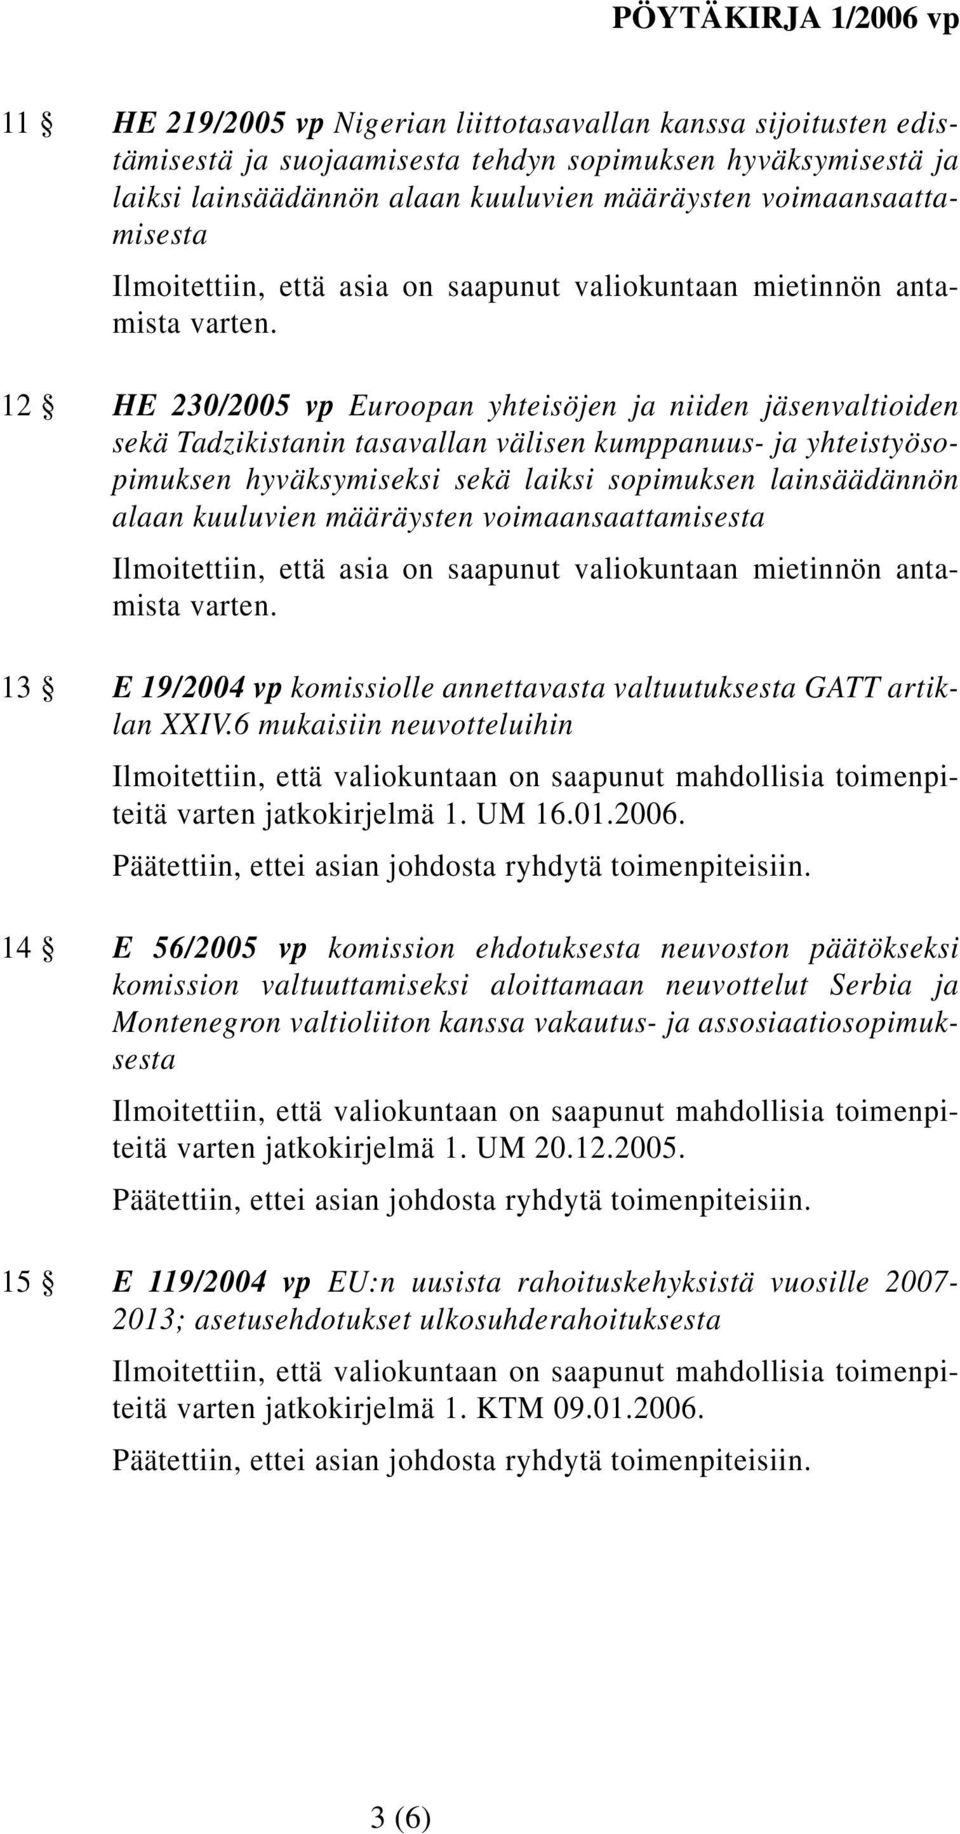 12 HE 230/2005 vp Euroopan yhteisöjen ja niiden jäsenvaltioiden sekä Tadzikistanin tasavallan välisen kumppanuus- ja yhteistyösopimuksen hyväksymiseksi sekä laiksi sopimuksen lainsäädännön alaan